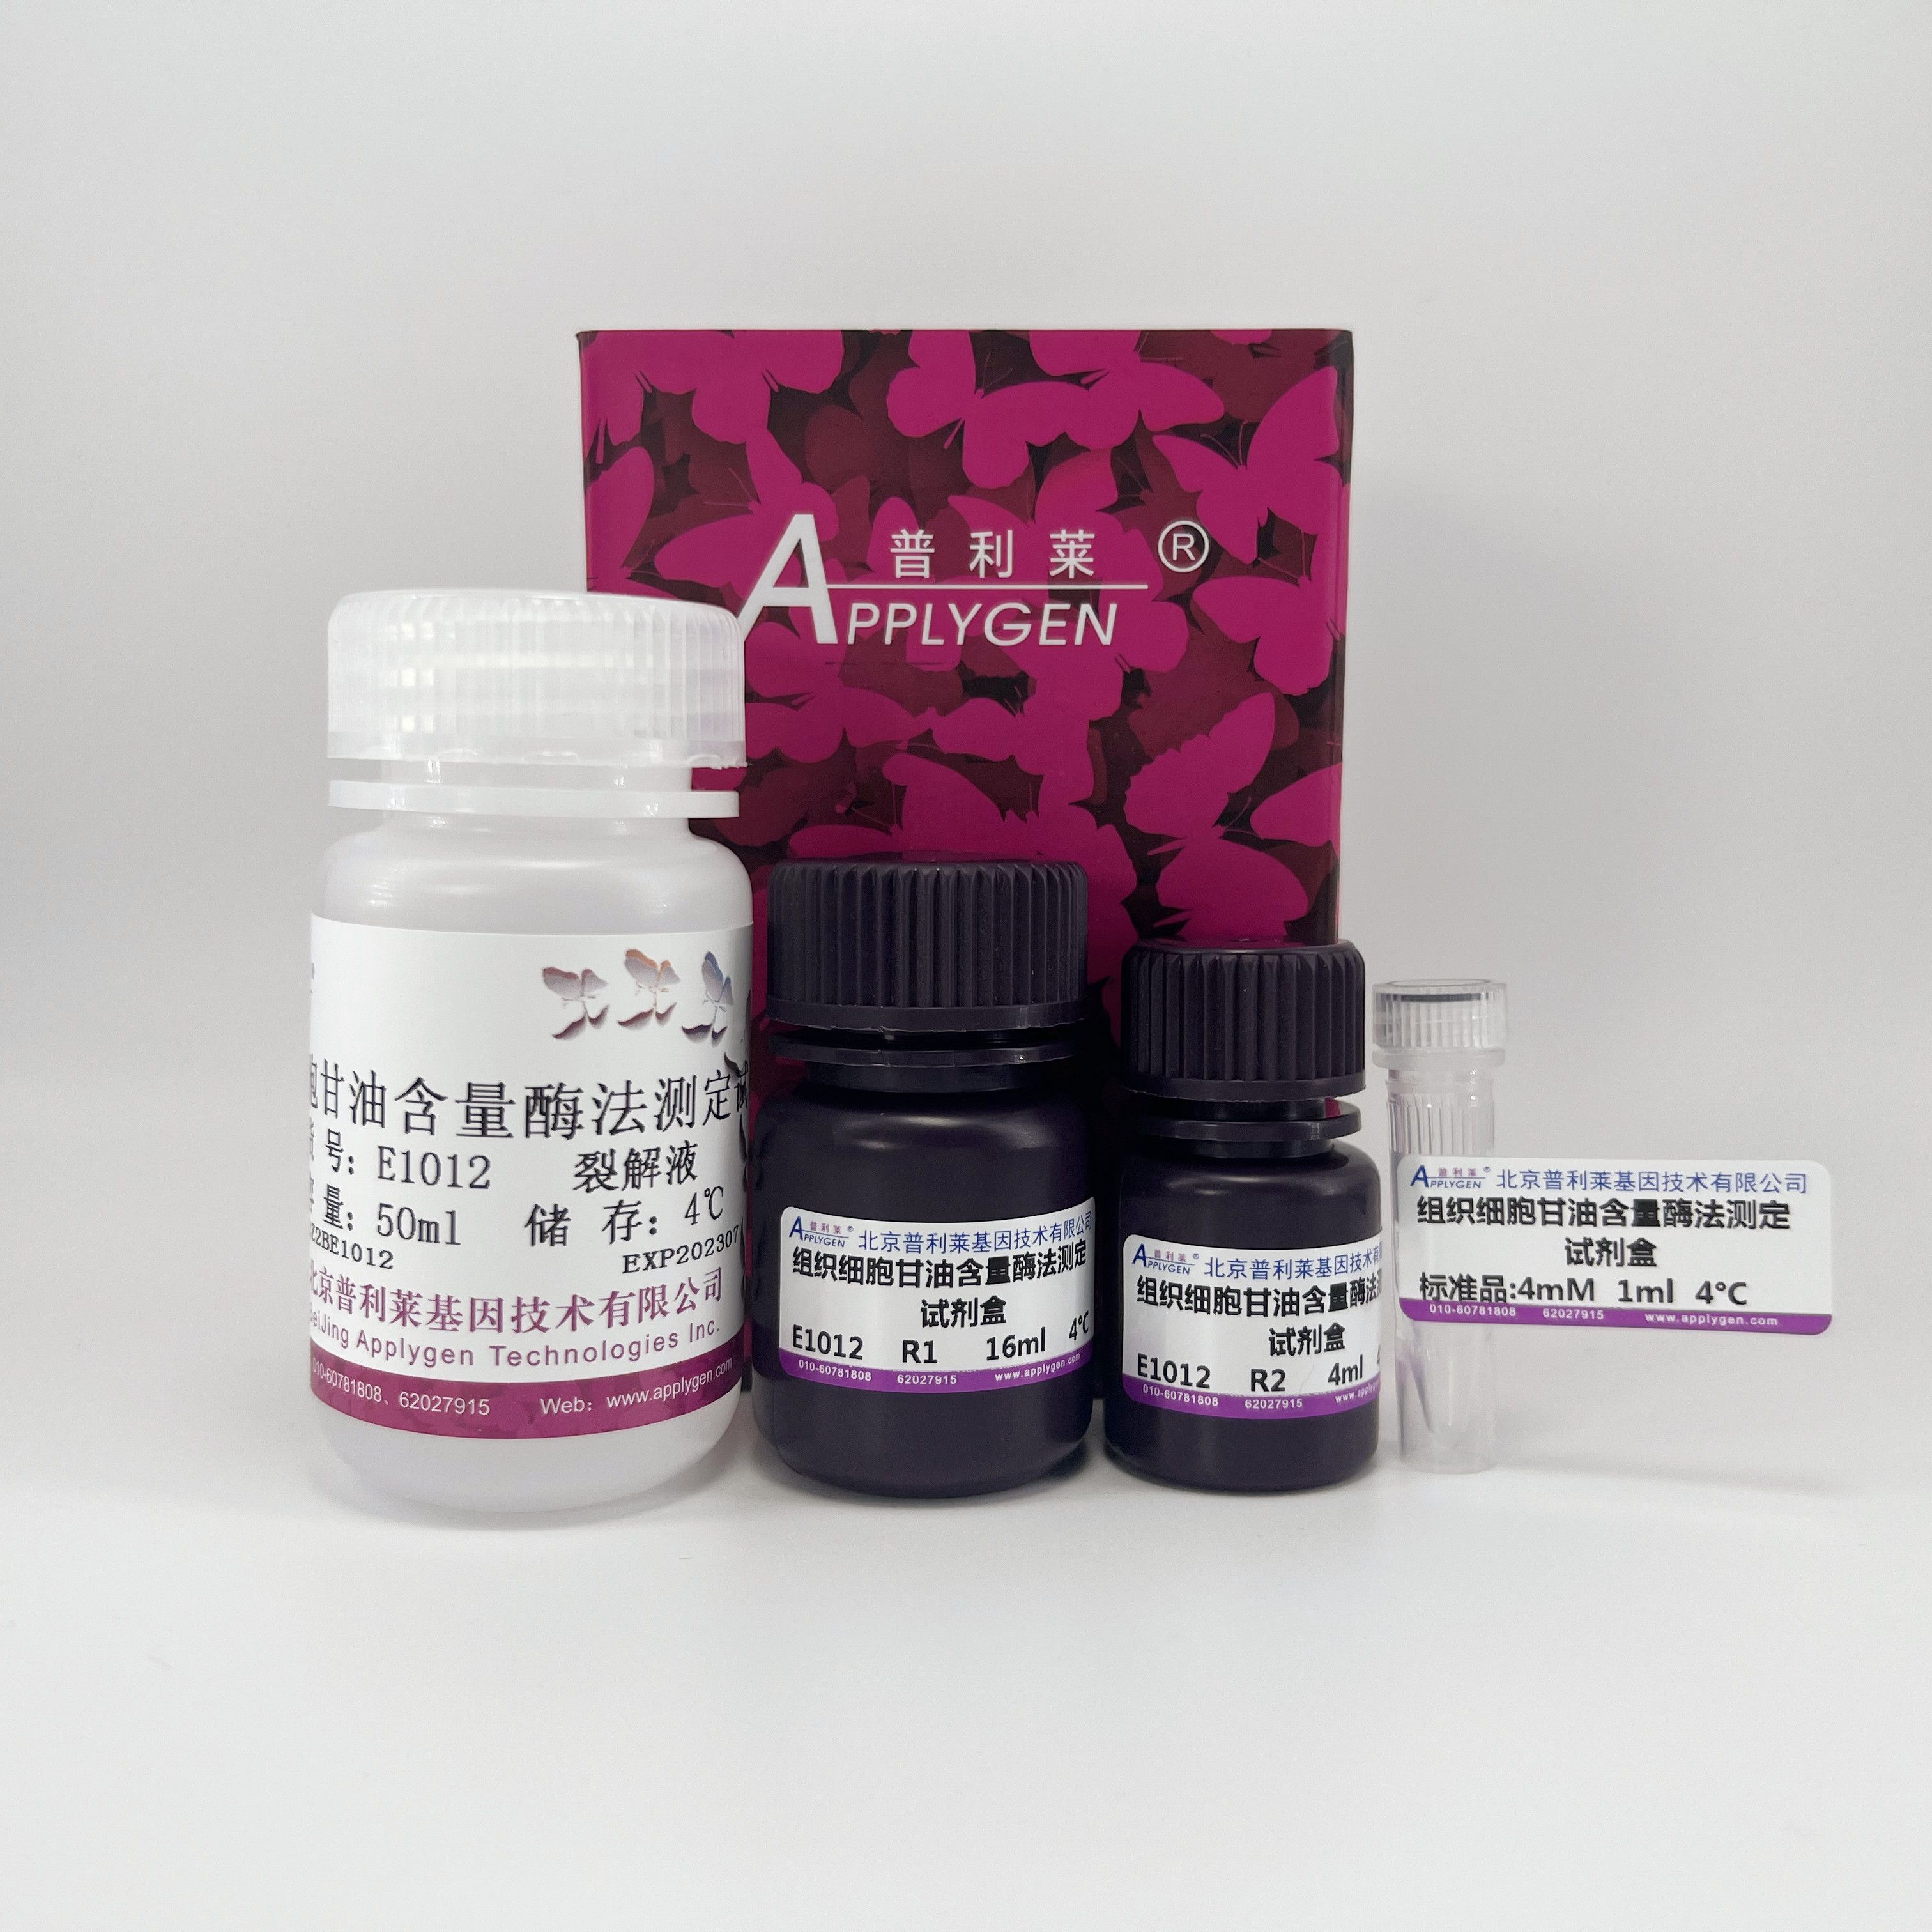 组织细胞甘油酶法测定试剂盒   E1012  厂家直销，提供OEM定制服务，大包装更优惠 